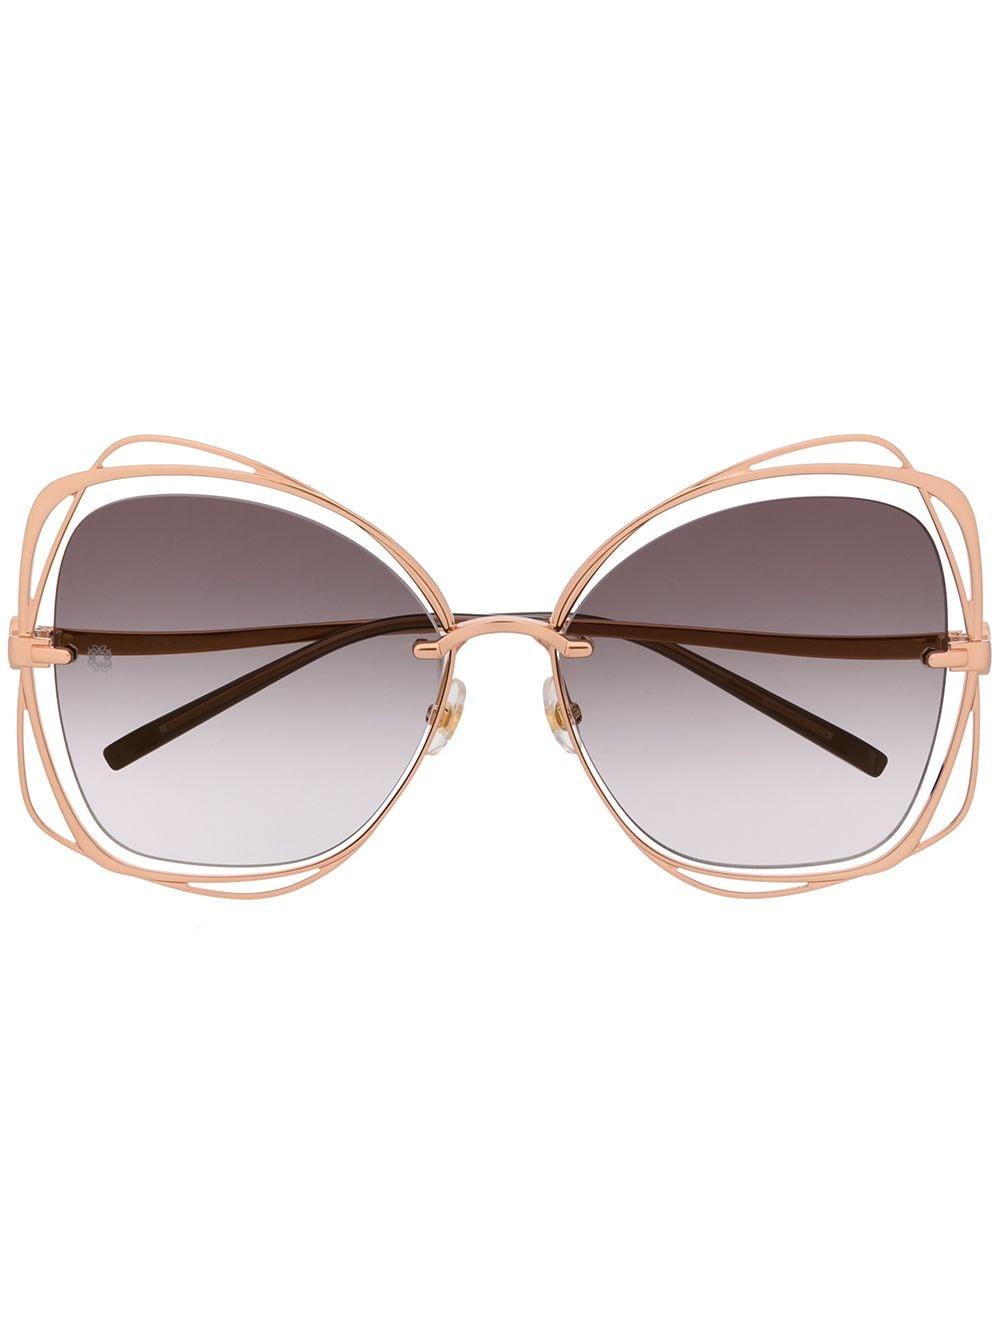 Elie Saab Le Jardin Oversized Frame Sunglasses | Lyst Australia